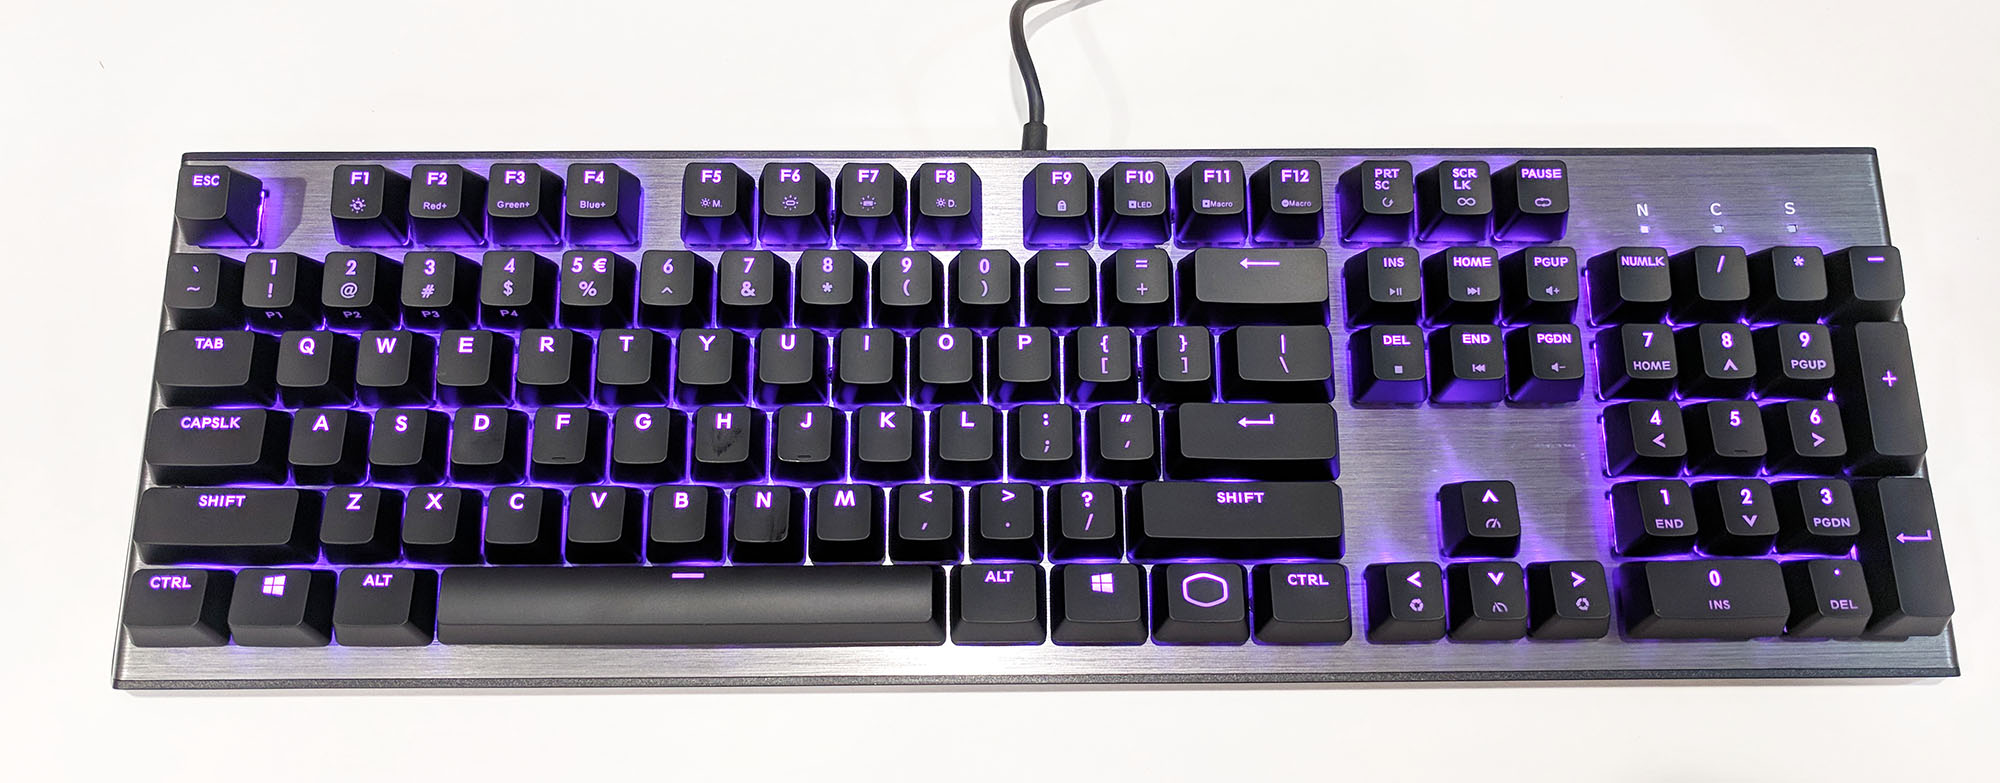 CK550 RGB Mechanical Gaming Keyboard